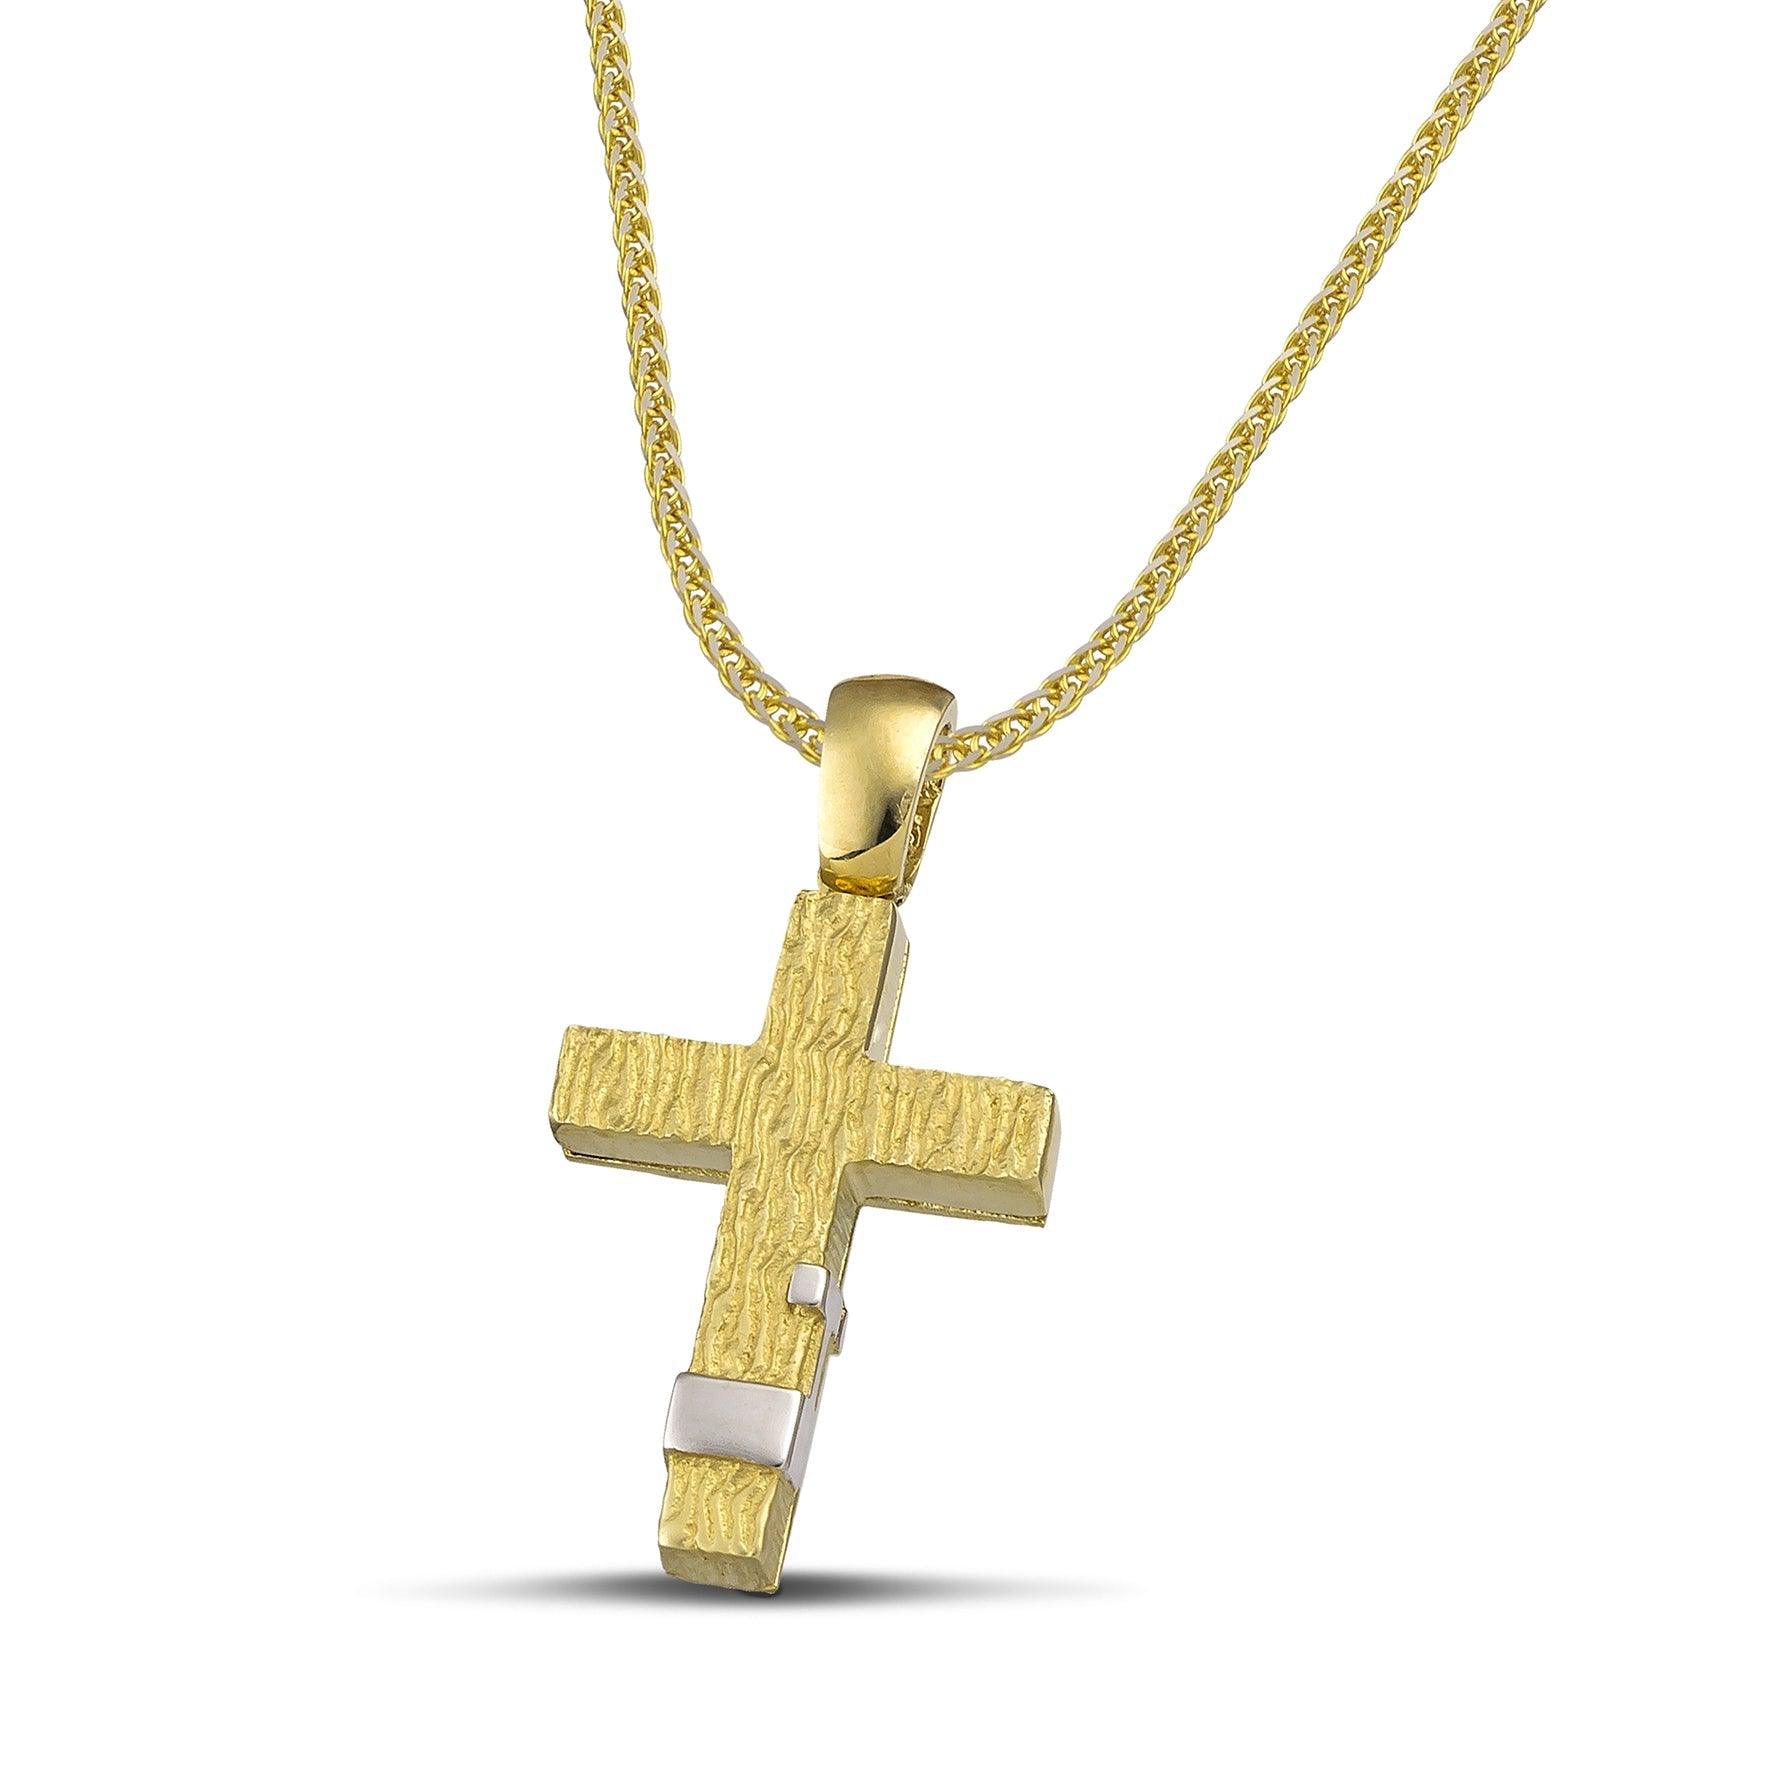 Μοντέρνος βαπτιστικός σταυρός για αγόρι από χρυσό Κ14. Πιστοποιημένη χειροποίηση κατασκευή, φορεμένη σε παχιά αλυσίδα.